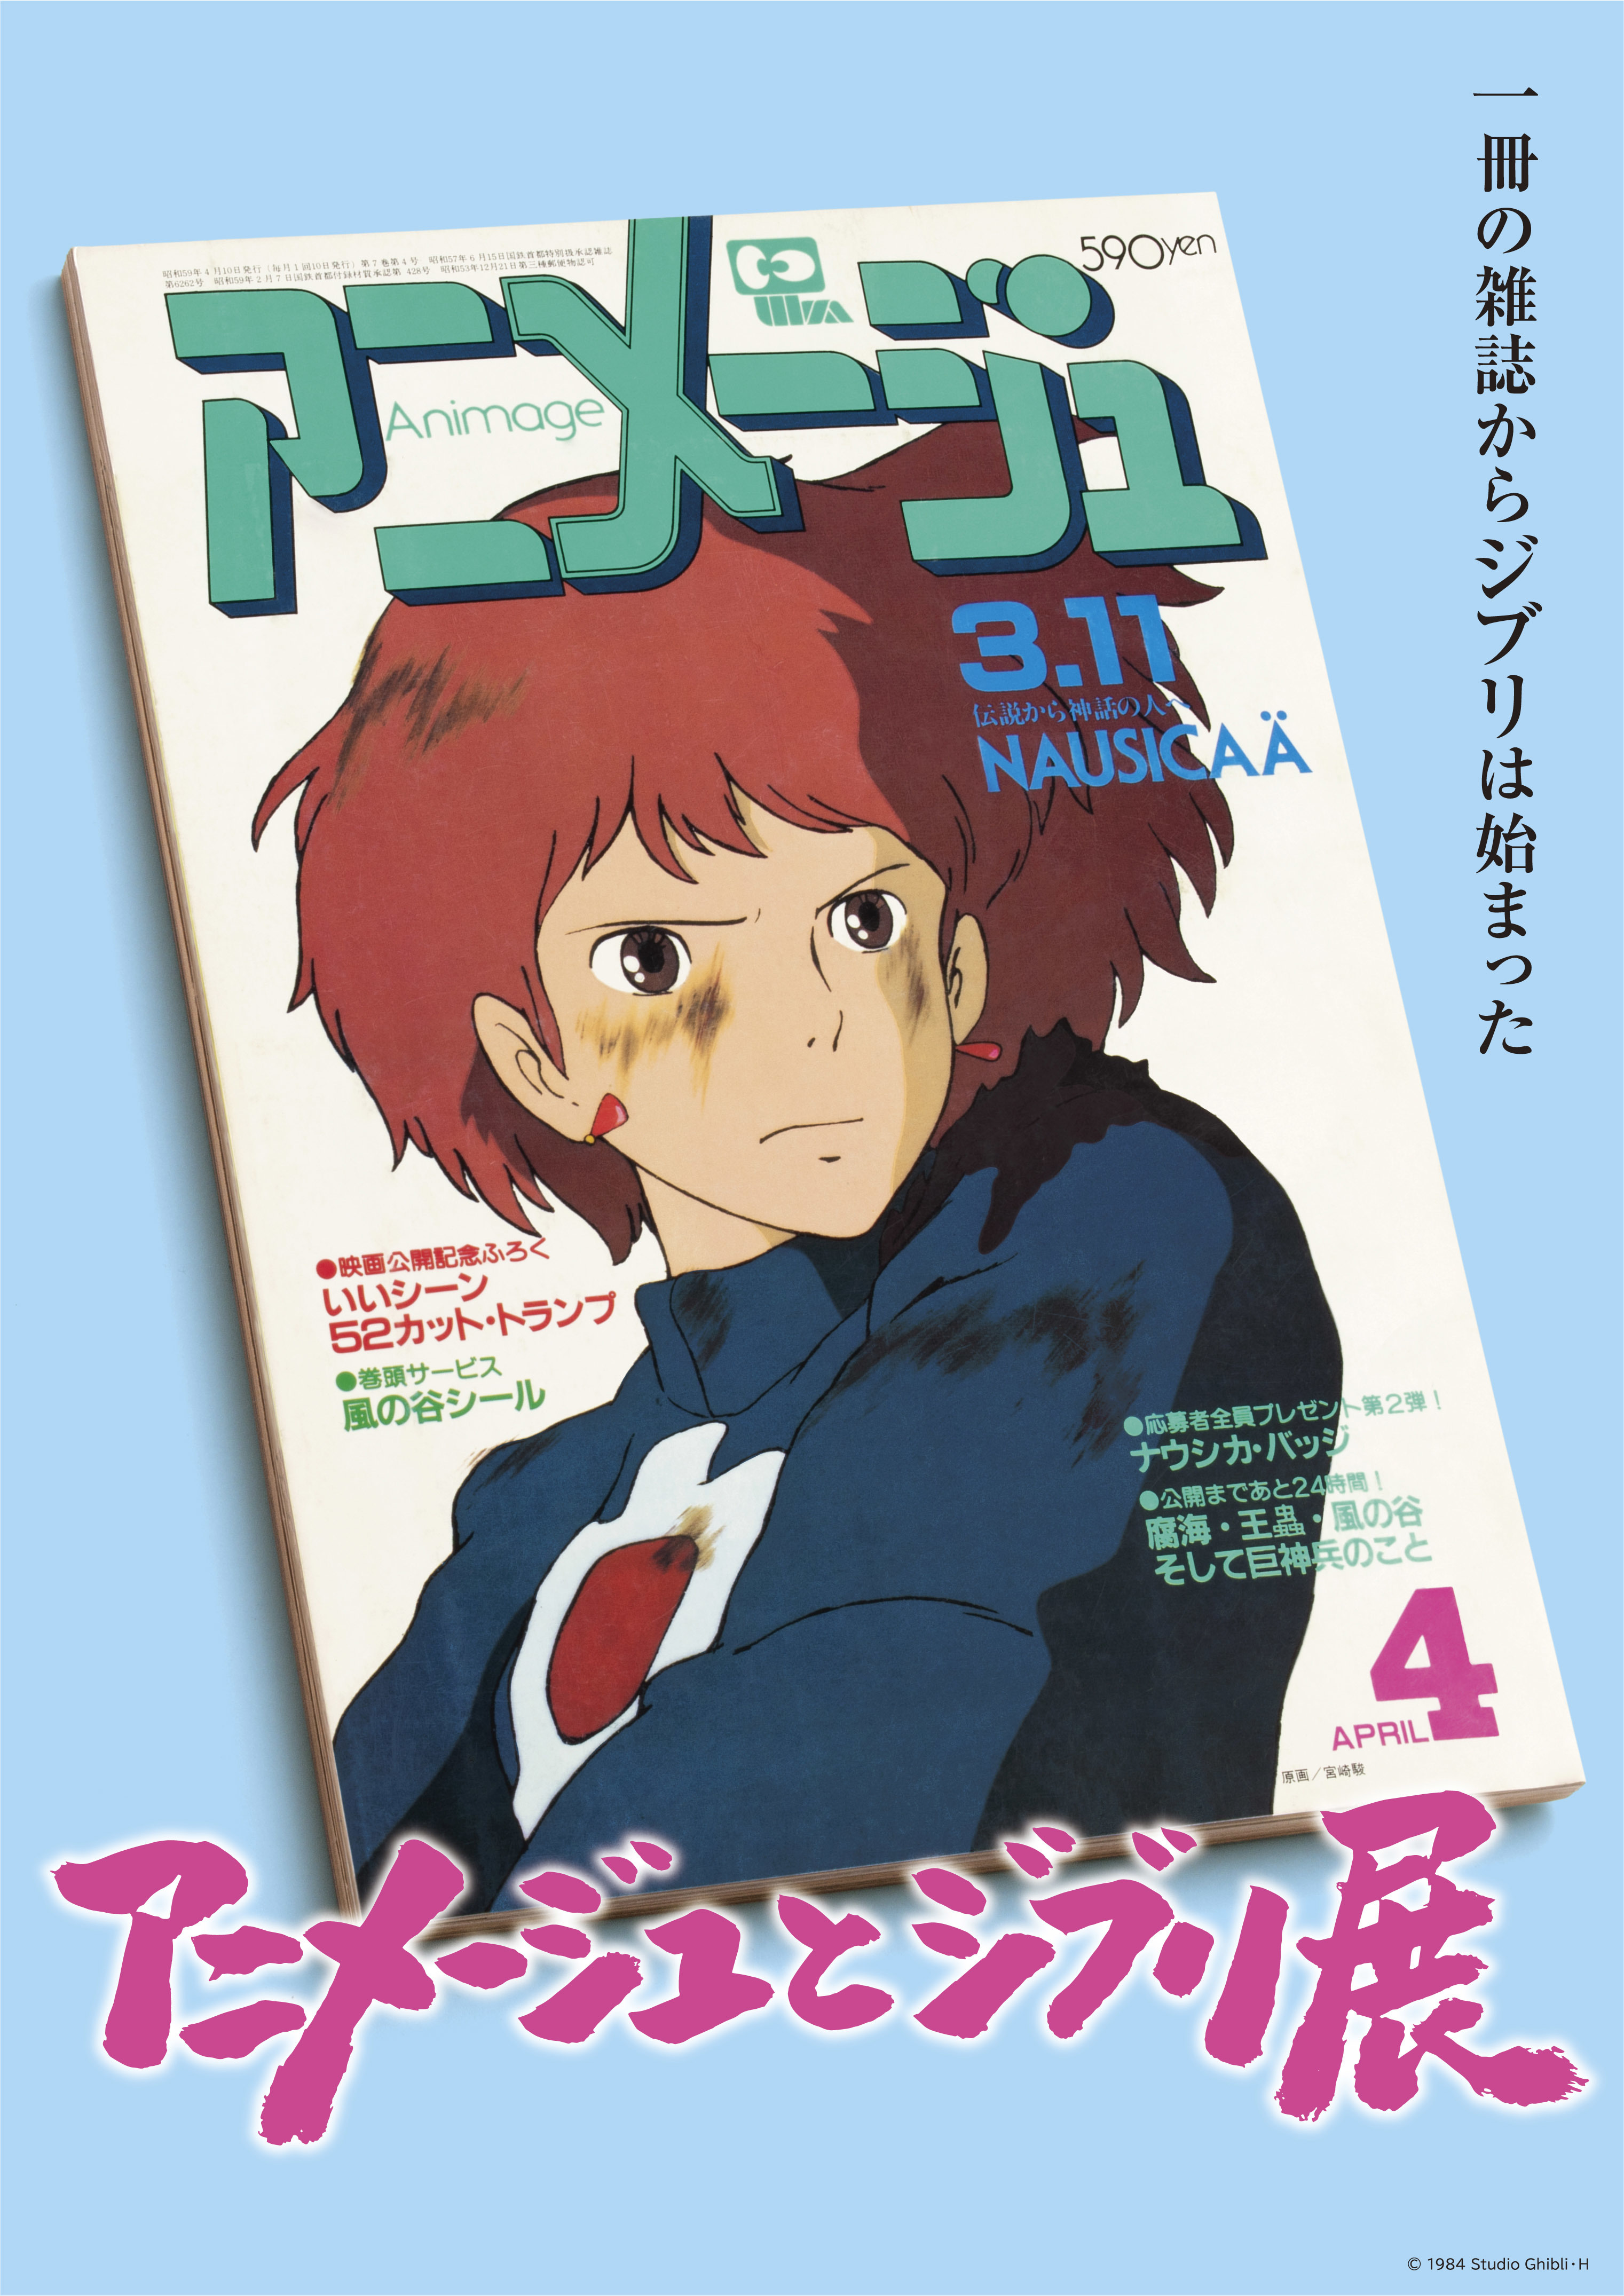 『「アニメージュとジブリ展」一冊の雑誌からジブリは始まった』 (c)1984 Studio Ghibli・H